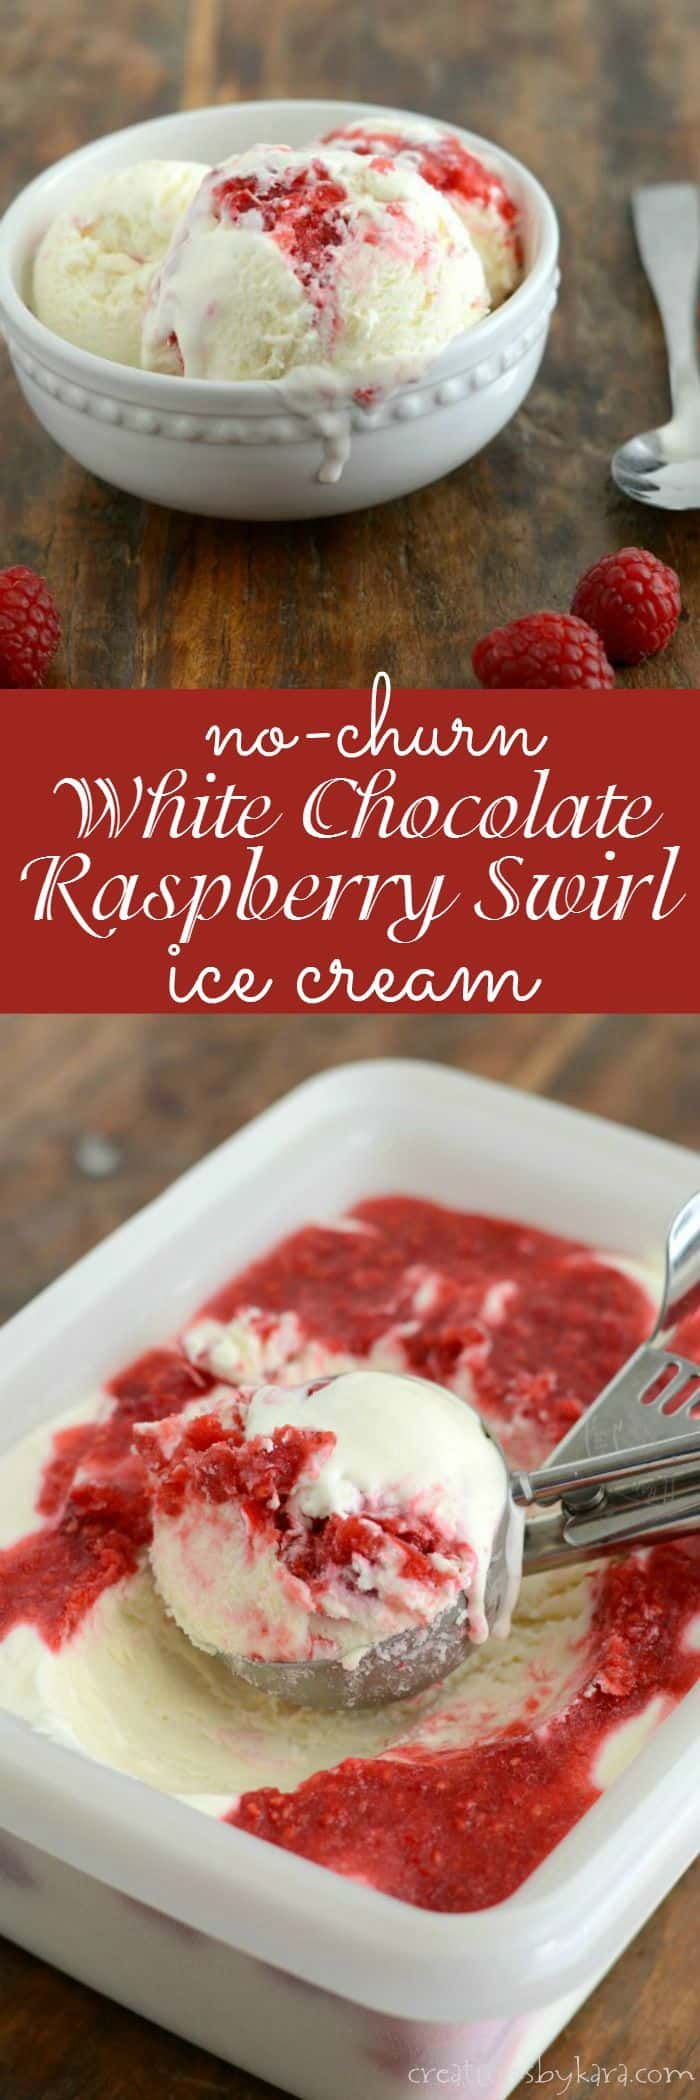 No-churn white chocolate raspberry swirl ice cream